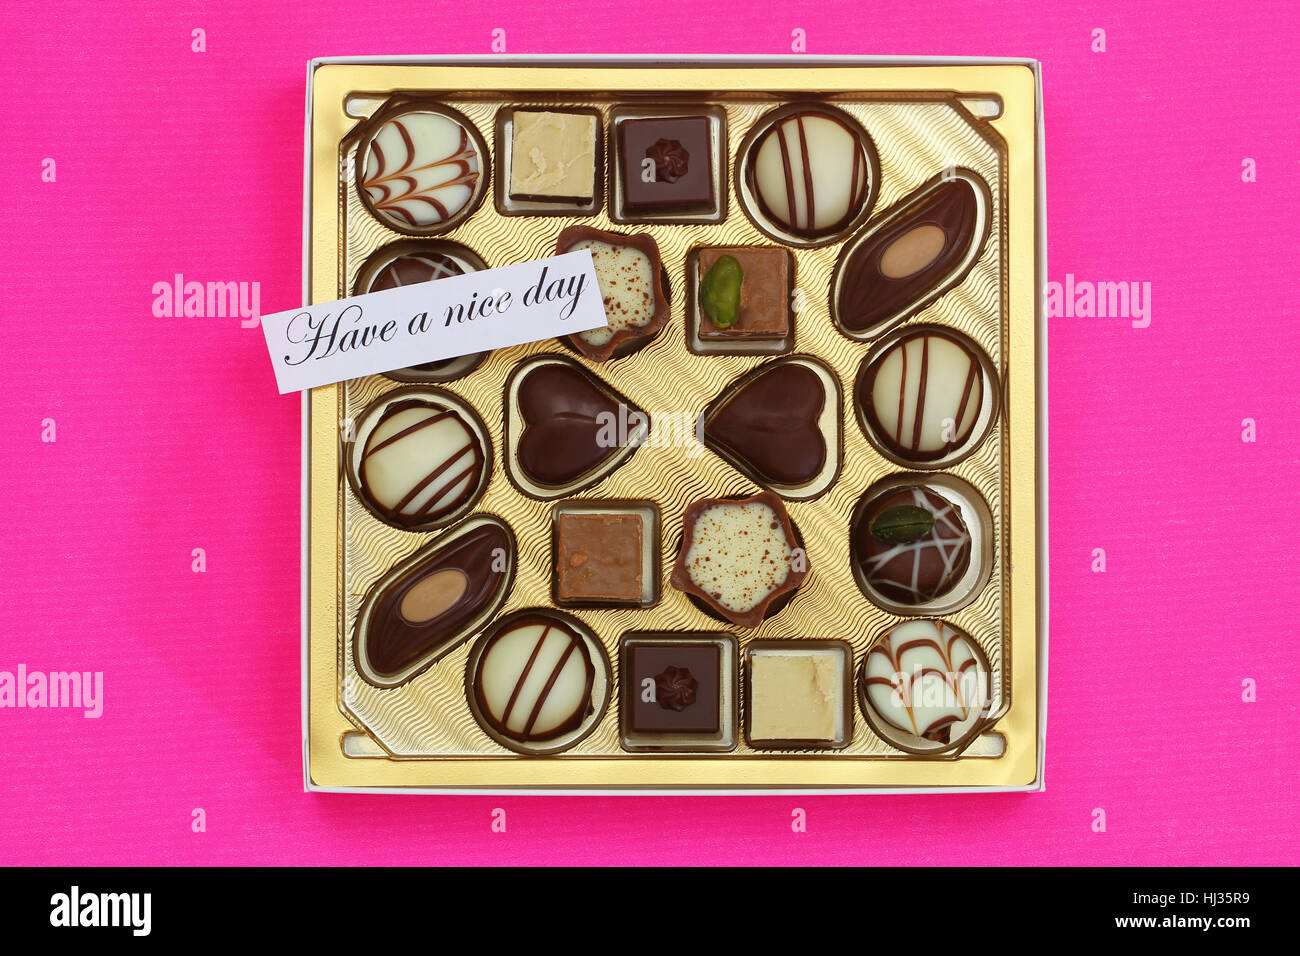 Hanno un bel giorno della carta con una scatola di cioccolatini assortiti su sfondo rosa Foto Stock